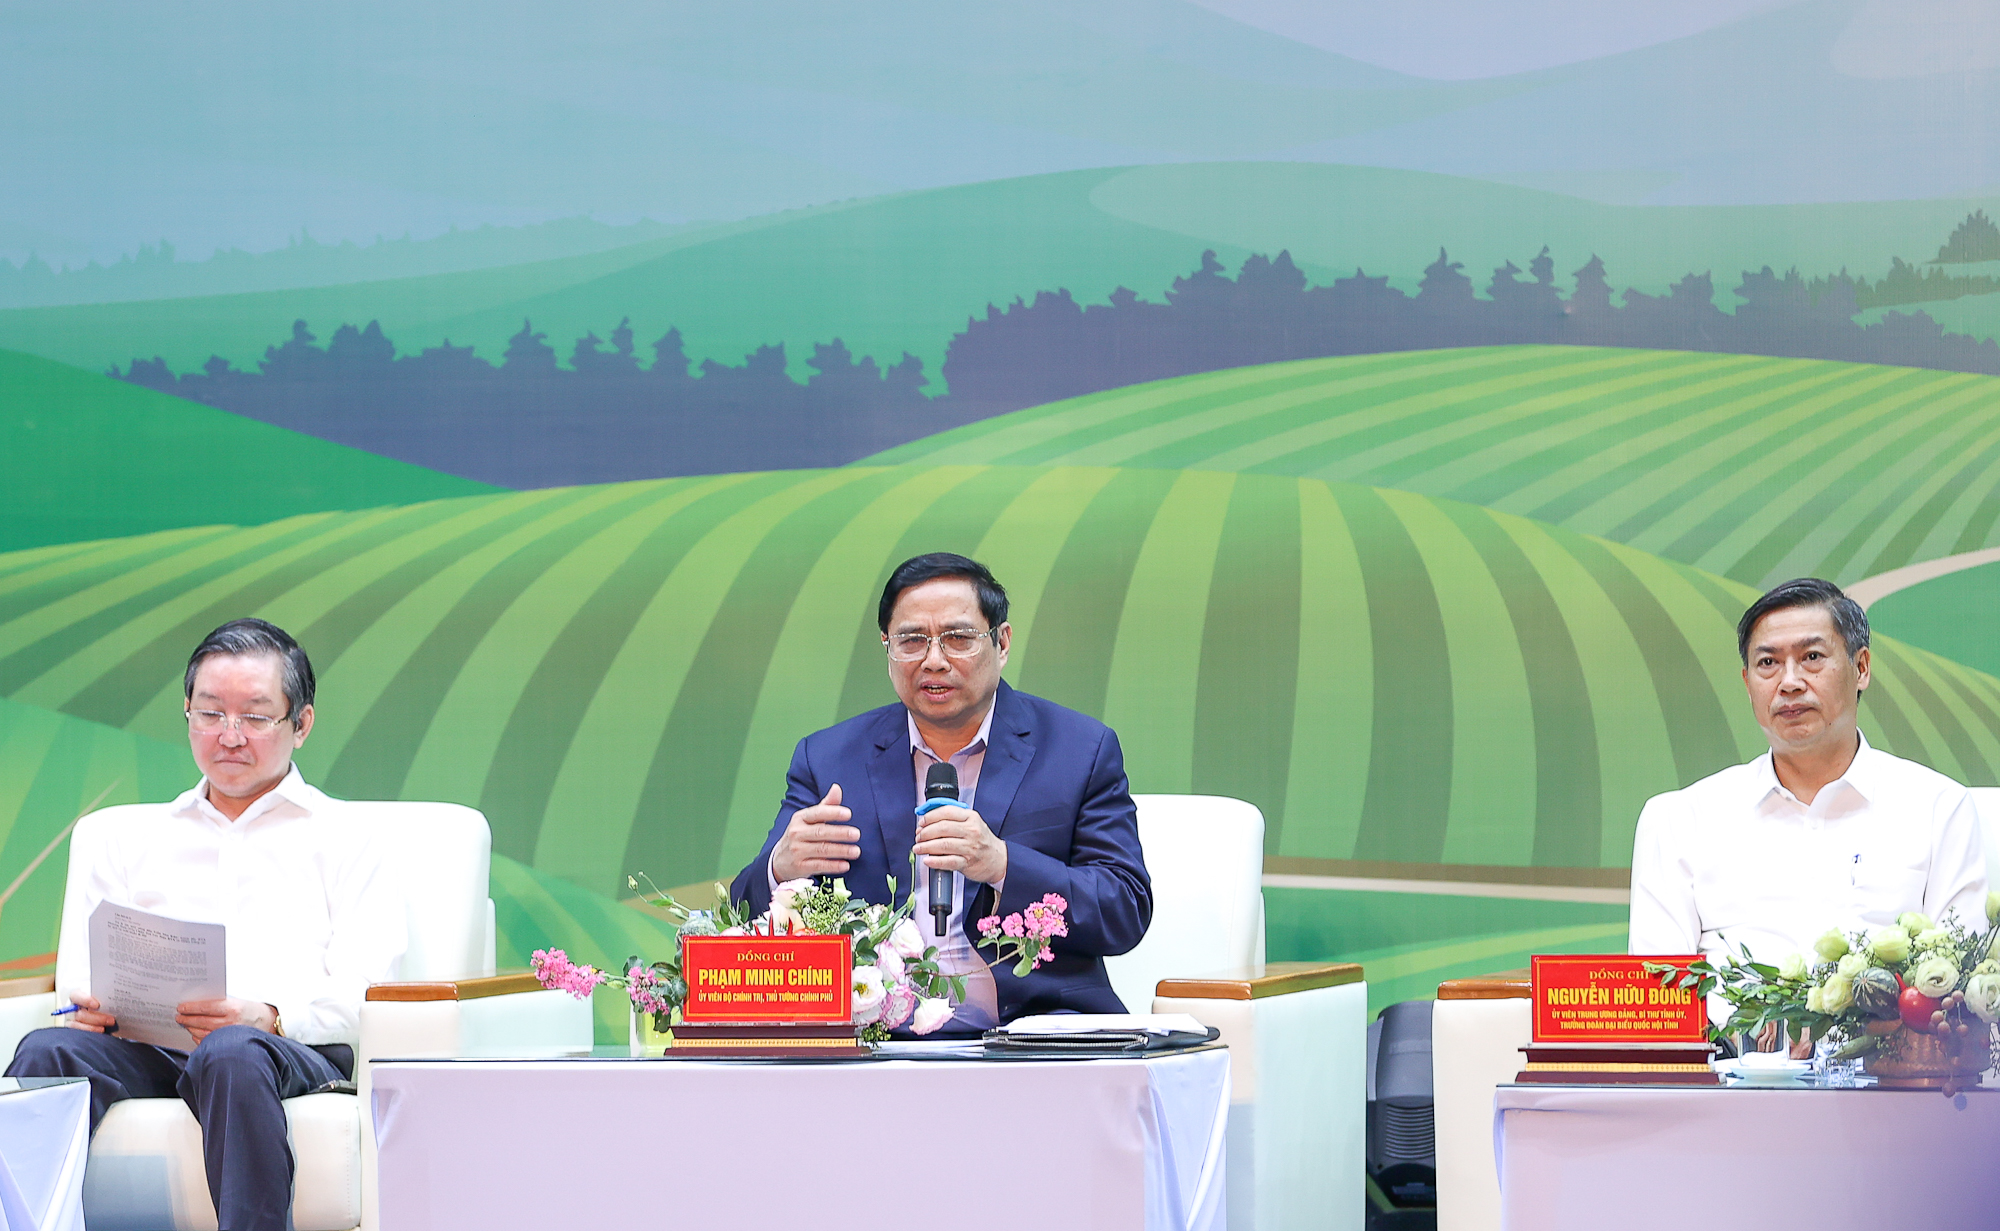 Chùm ảnh: Thủ tướng Chính phủ đối thoại với nông dân - Ảnh 2.